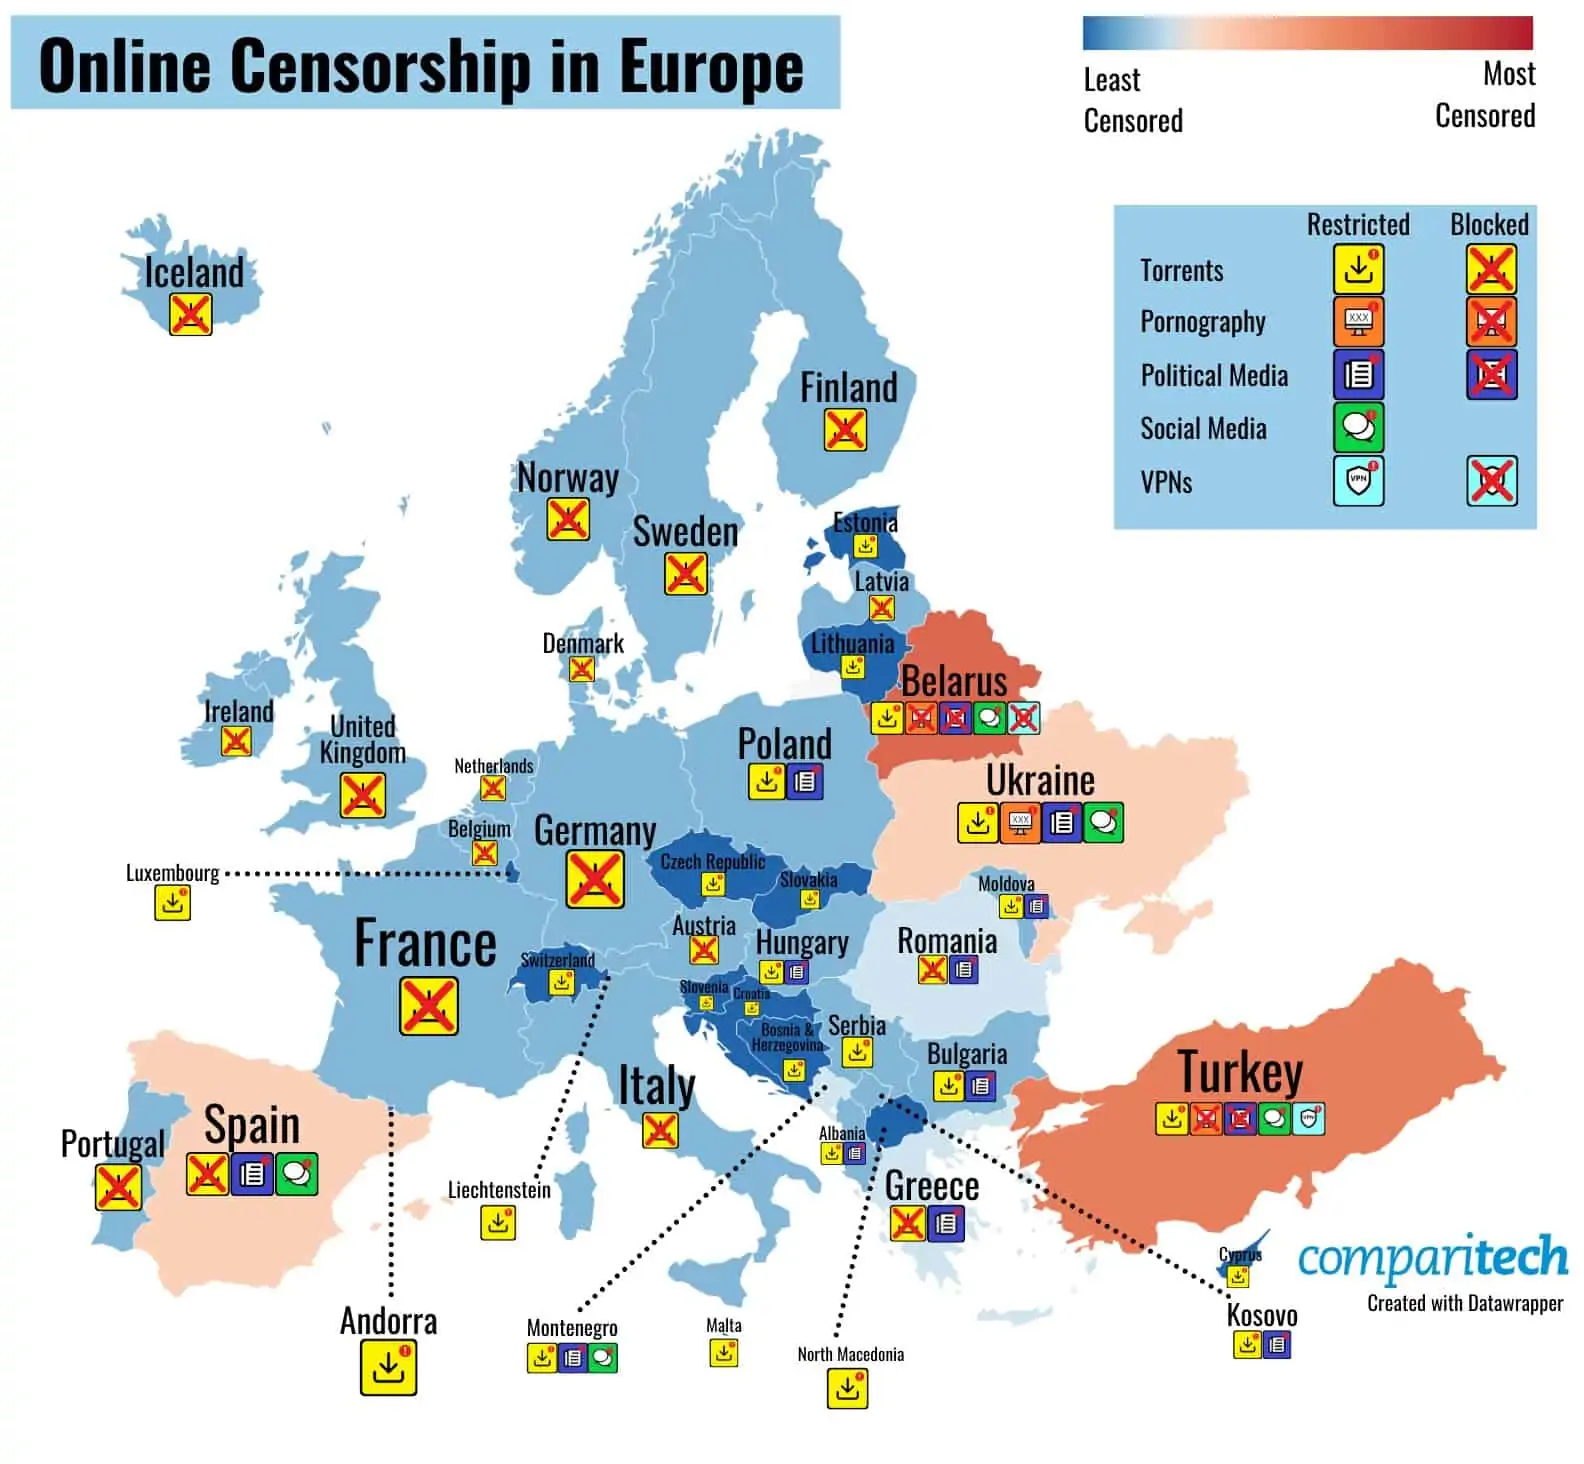 Online Censorship in Europe